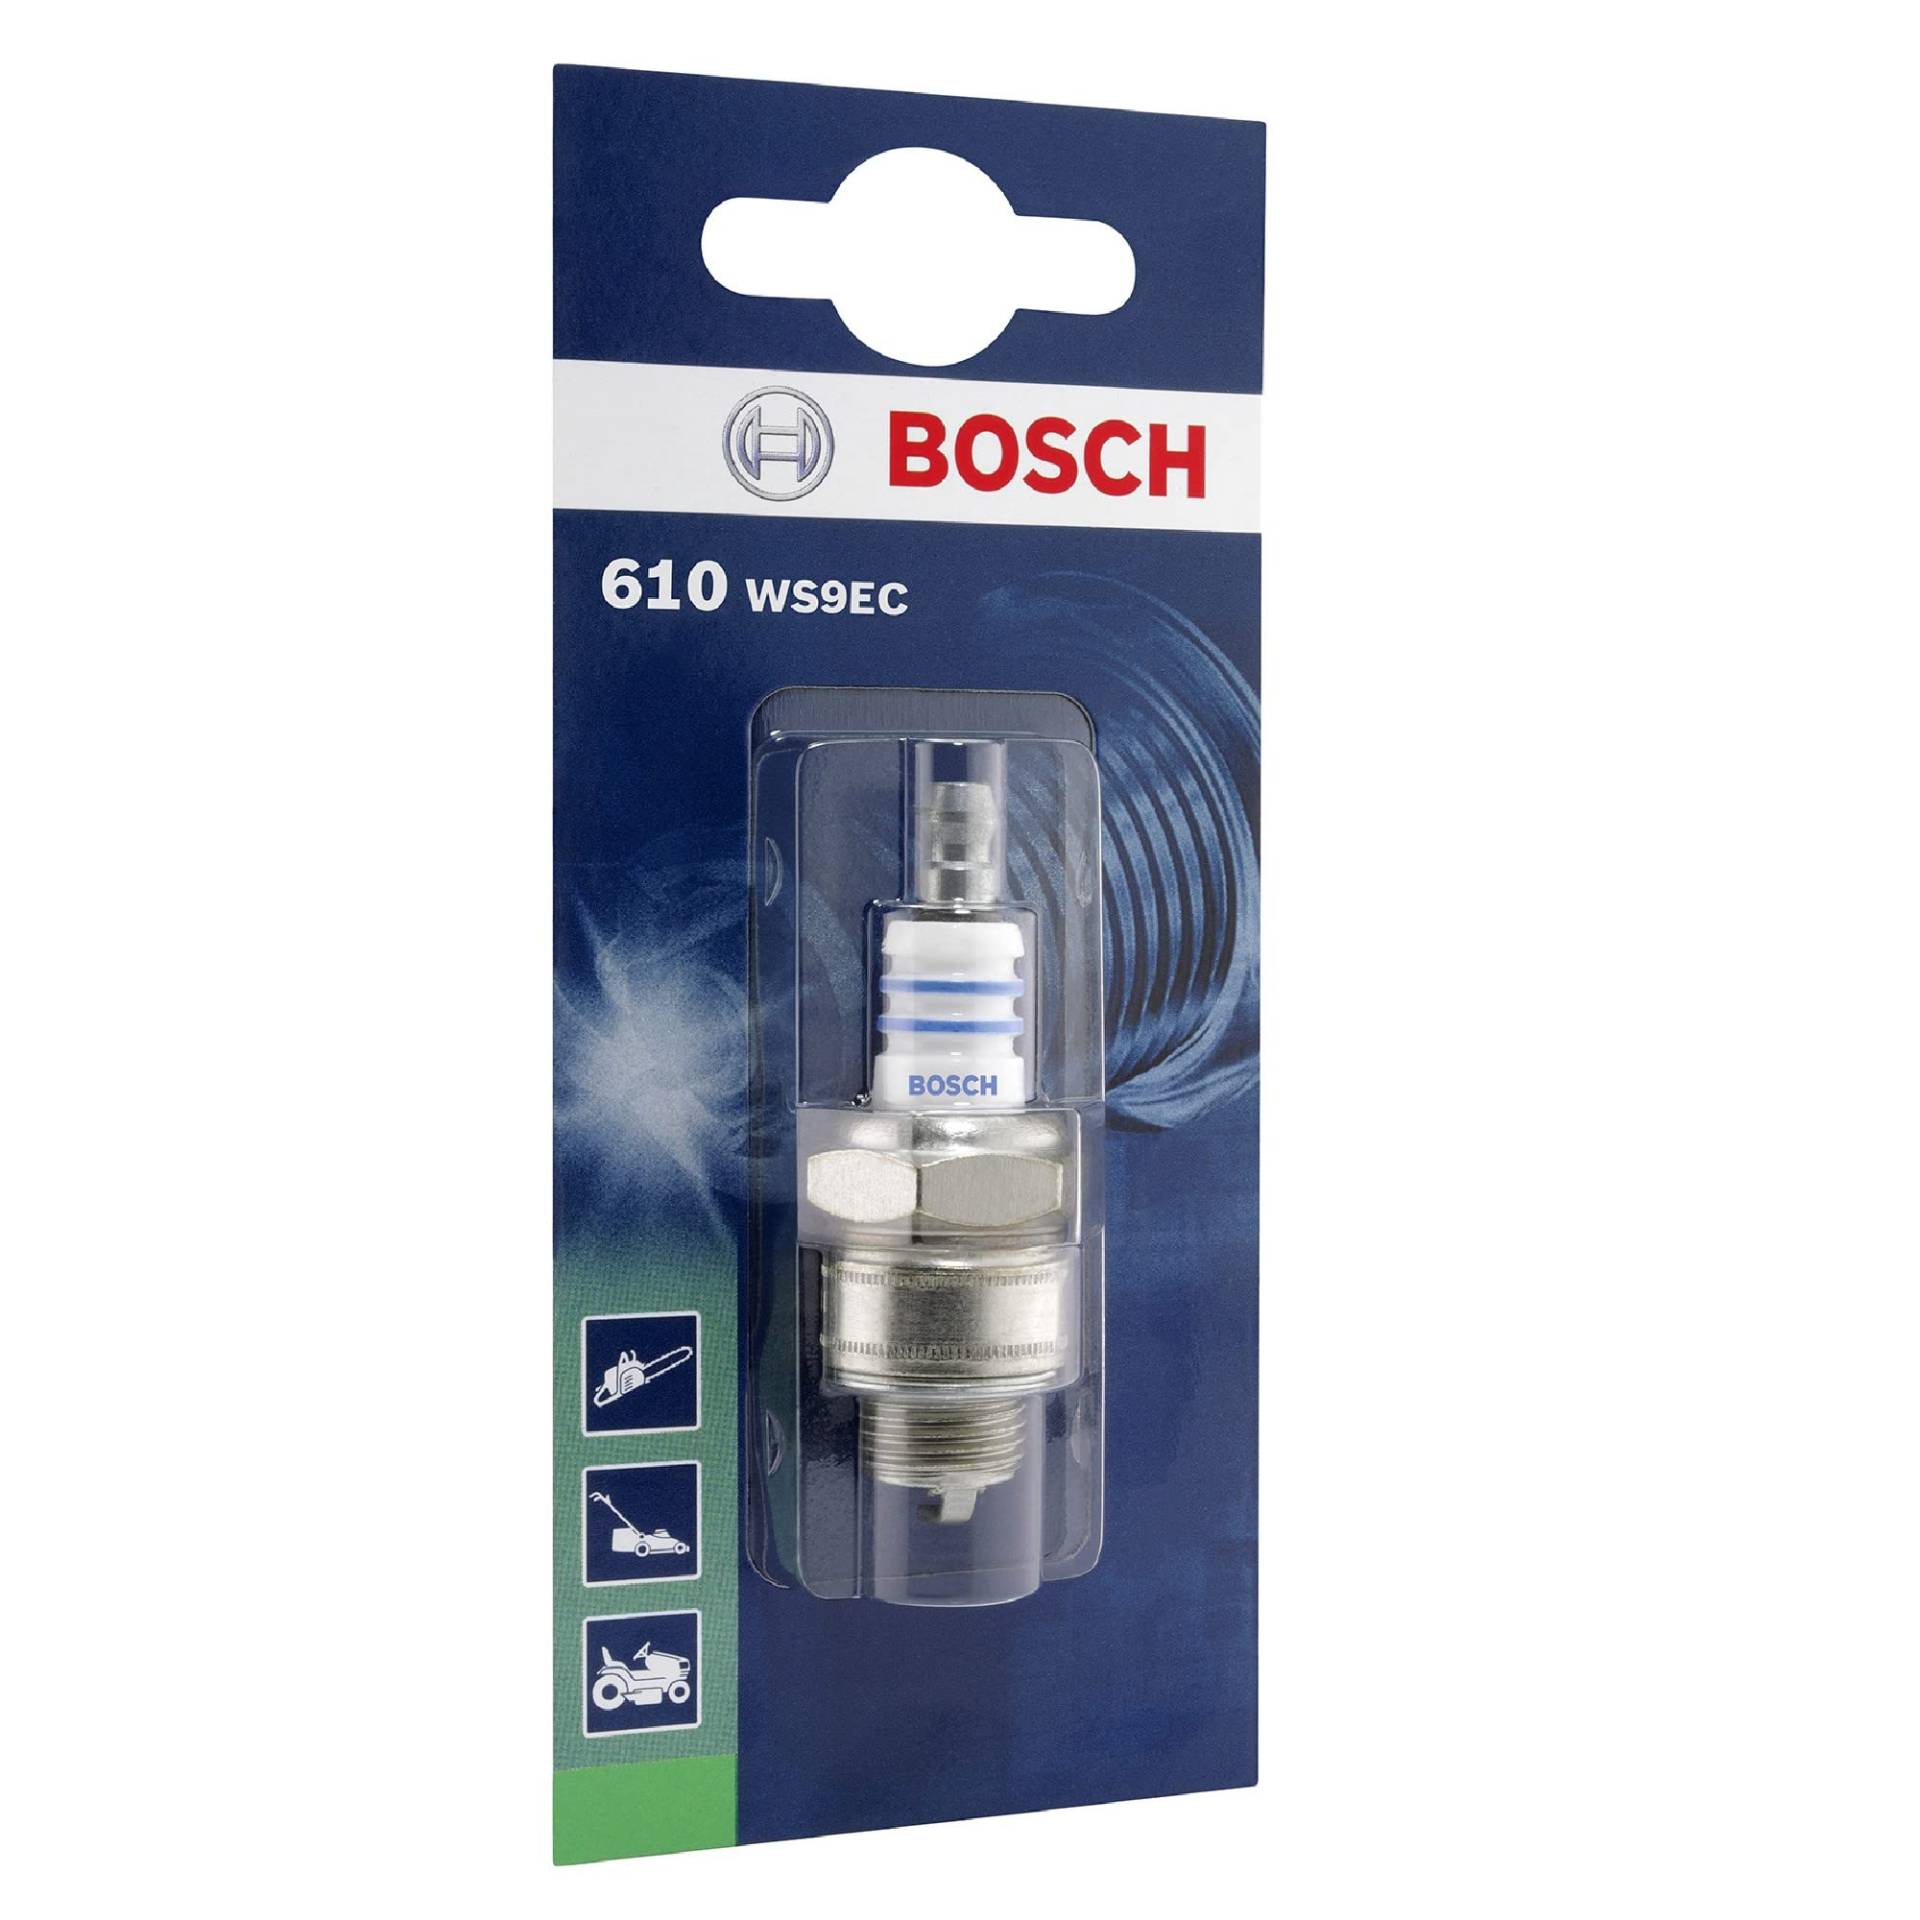 Bosch WS9EC (610) - Zündkerze für Gartengeräte - 1 Stück von Bosch Automotive